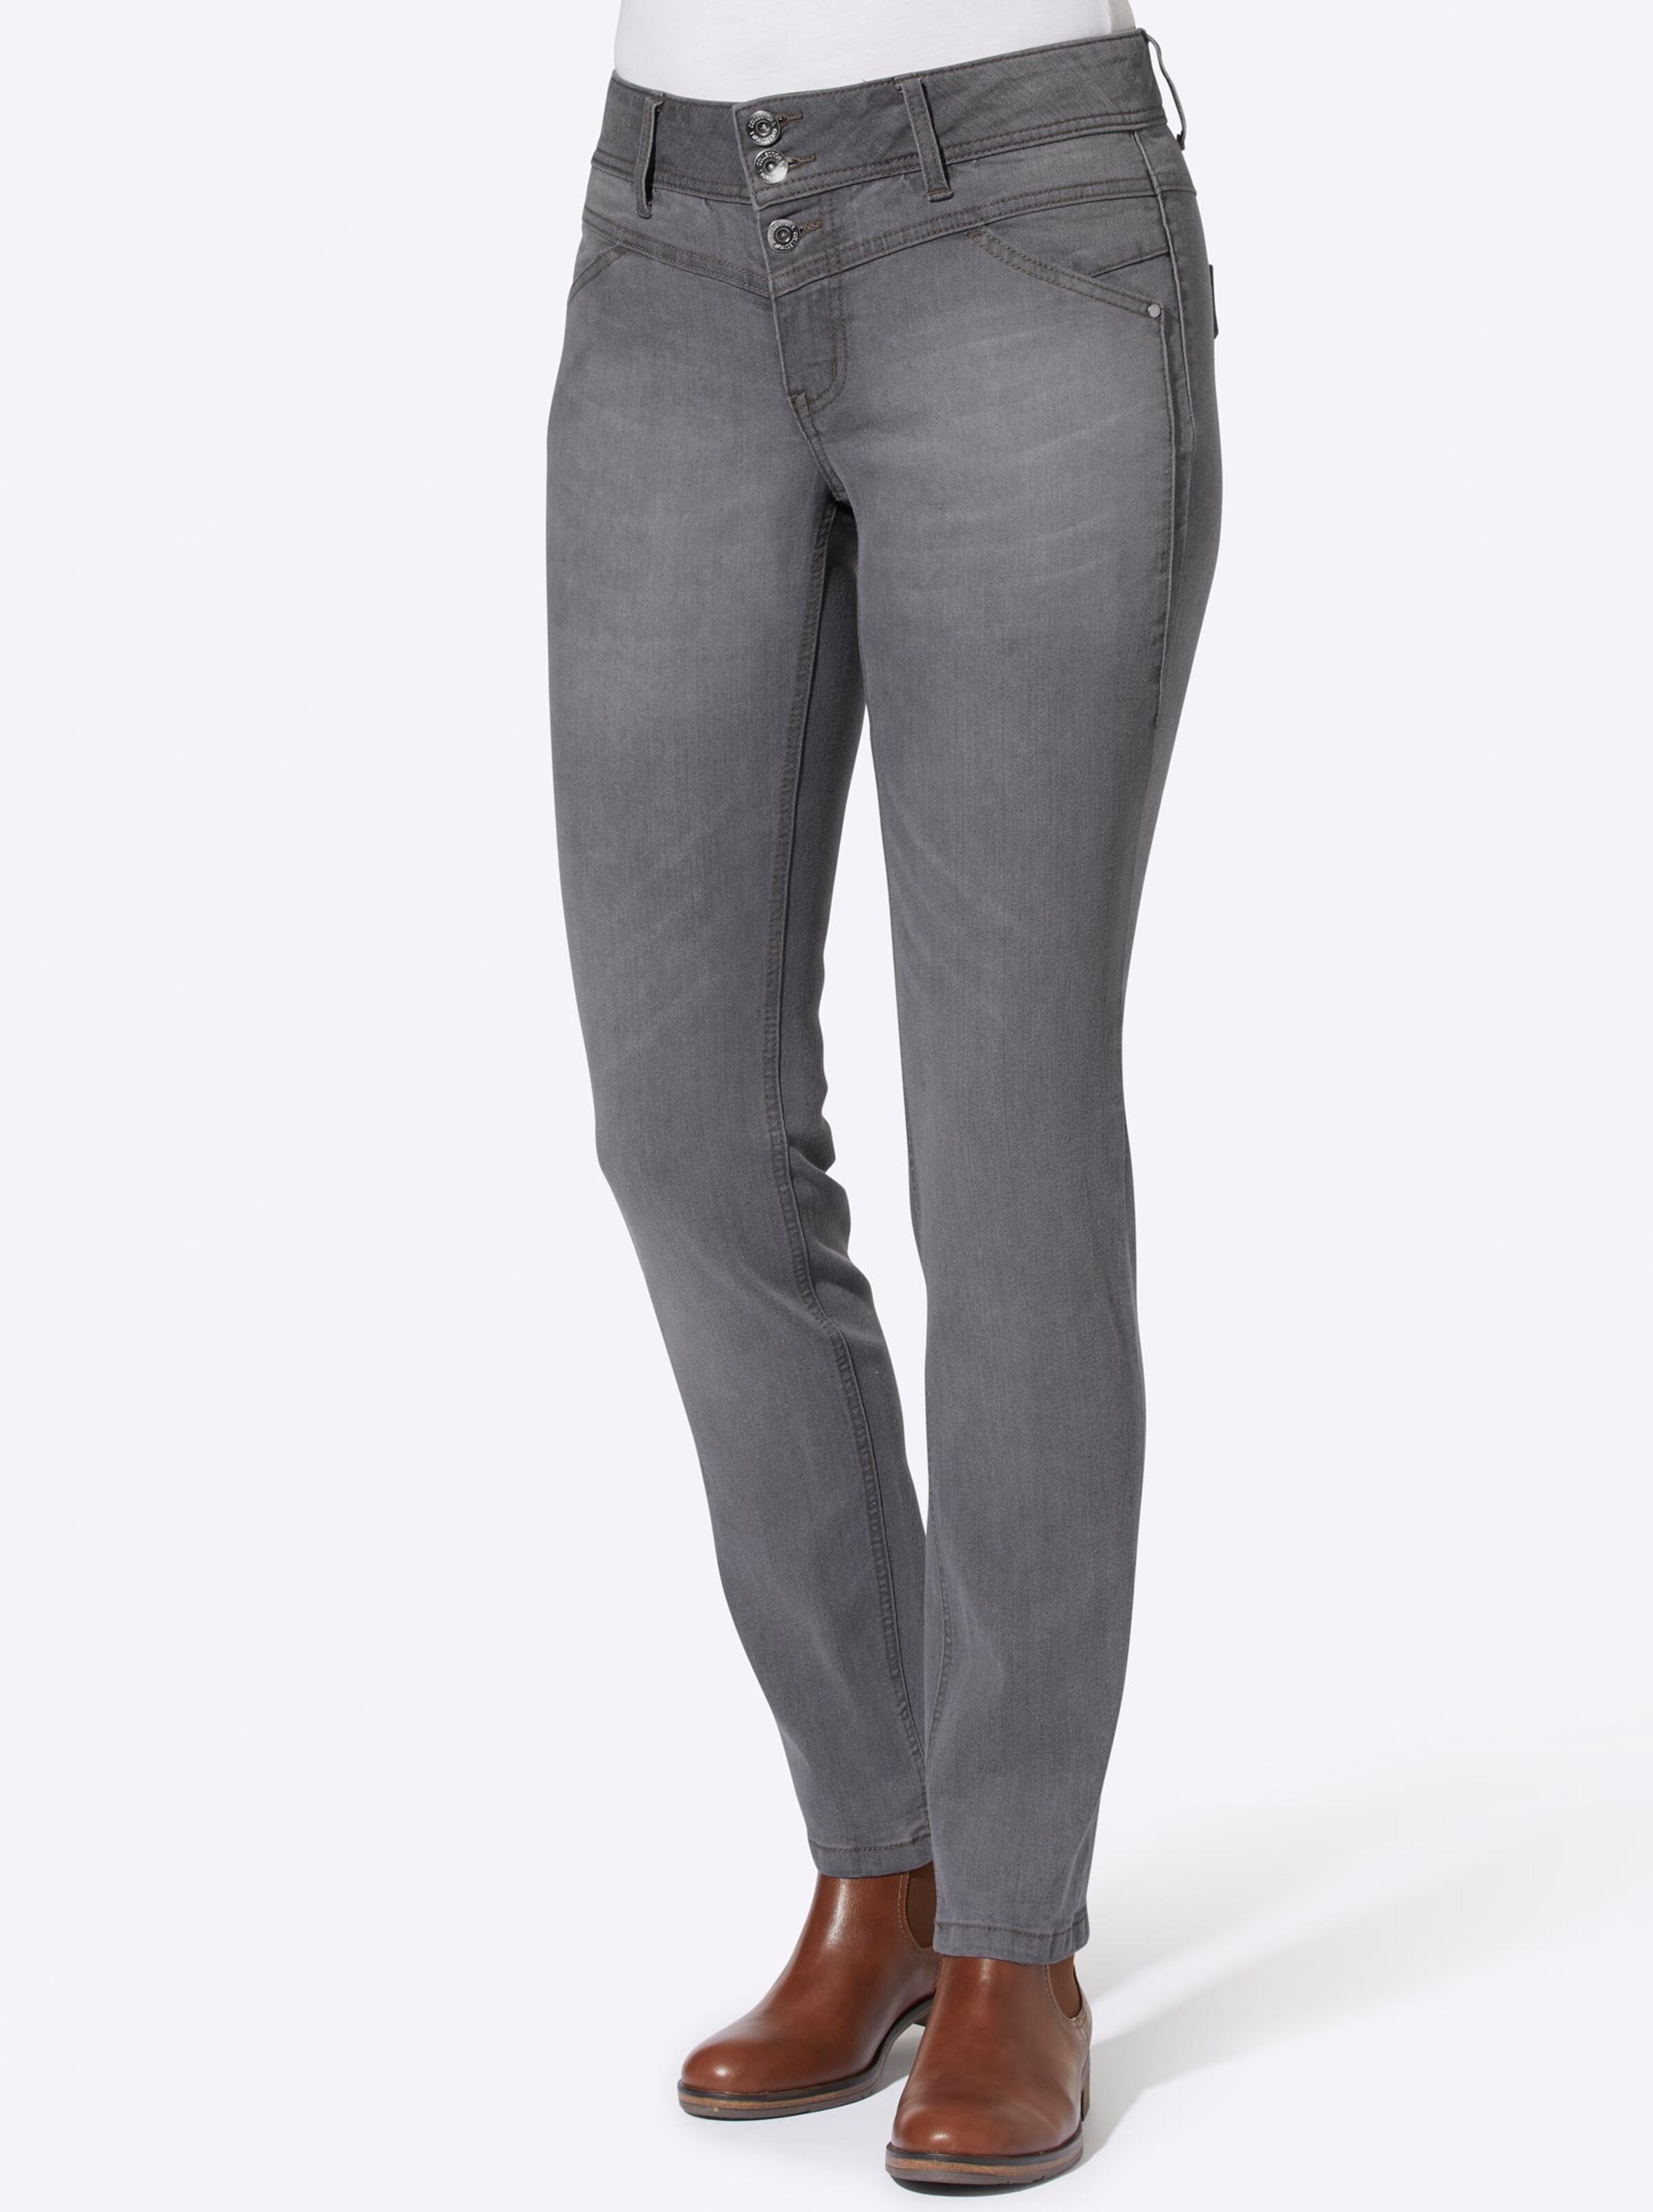 Damenmode Jeans Jeans in grey-denim 